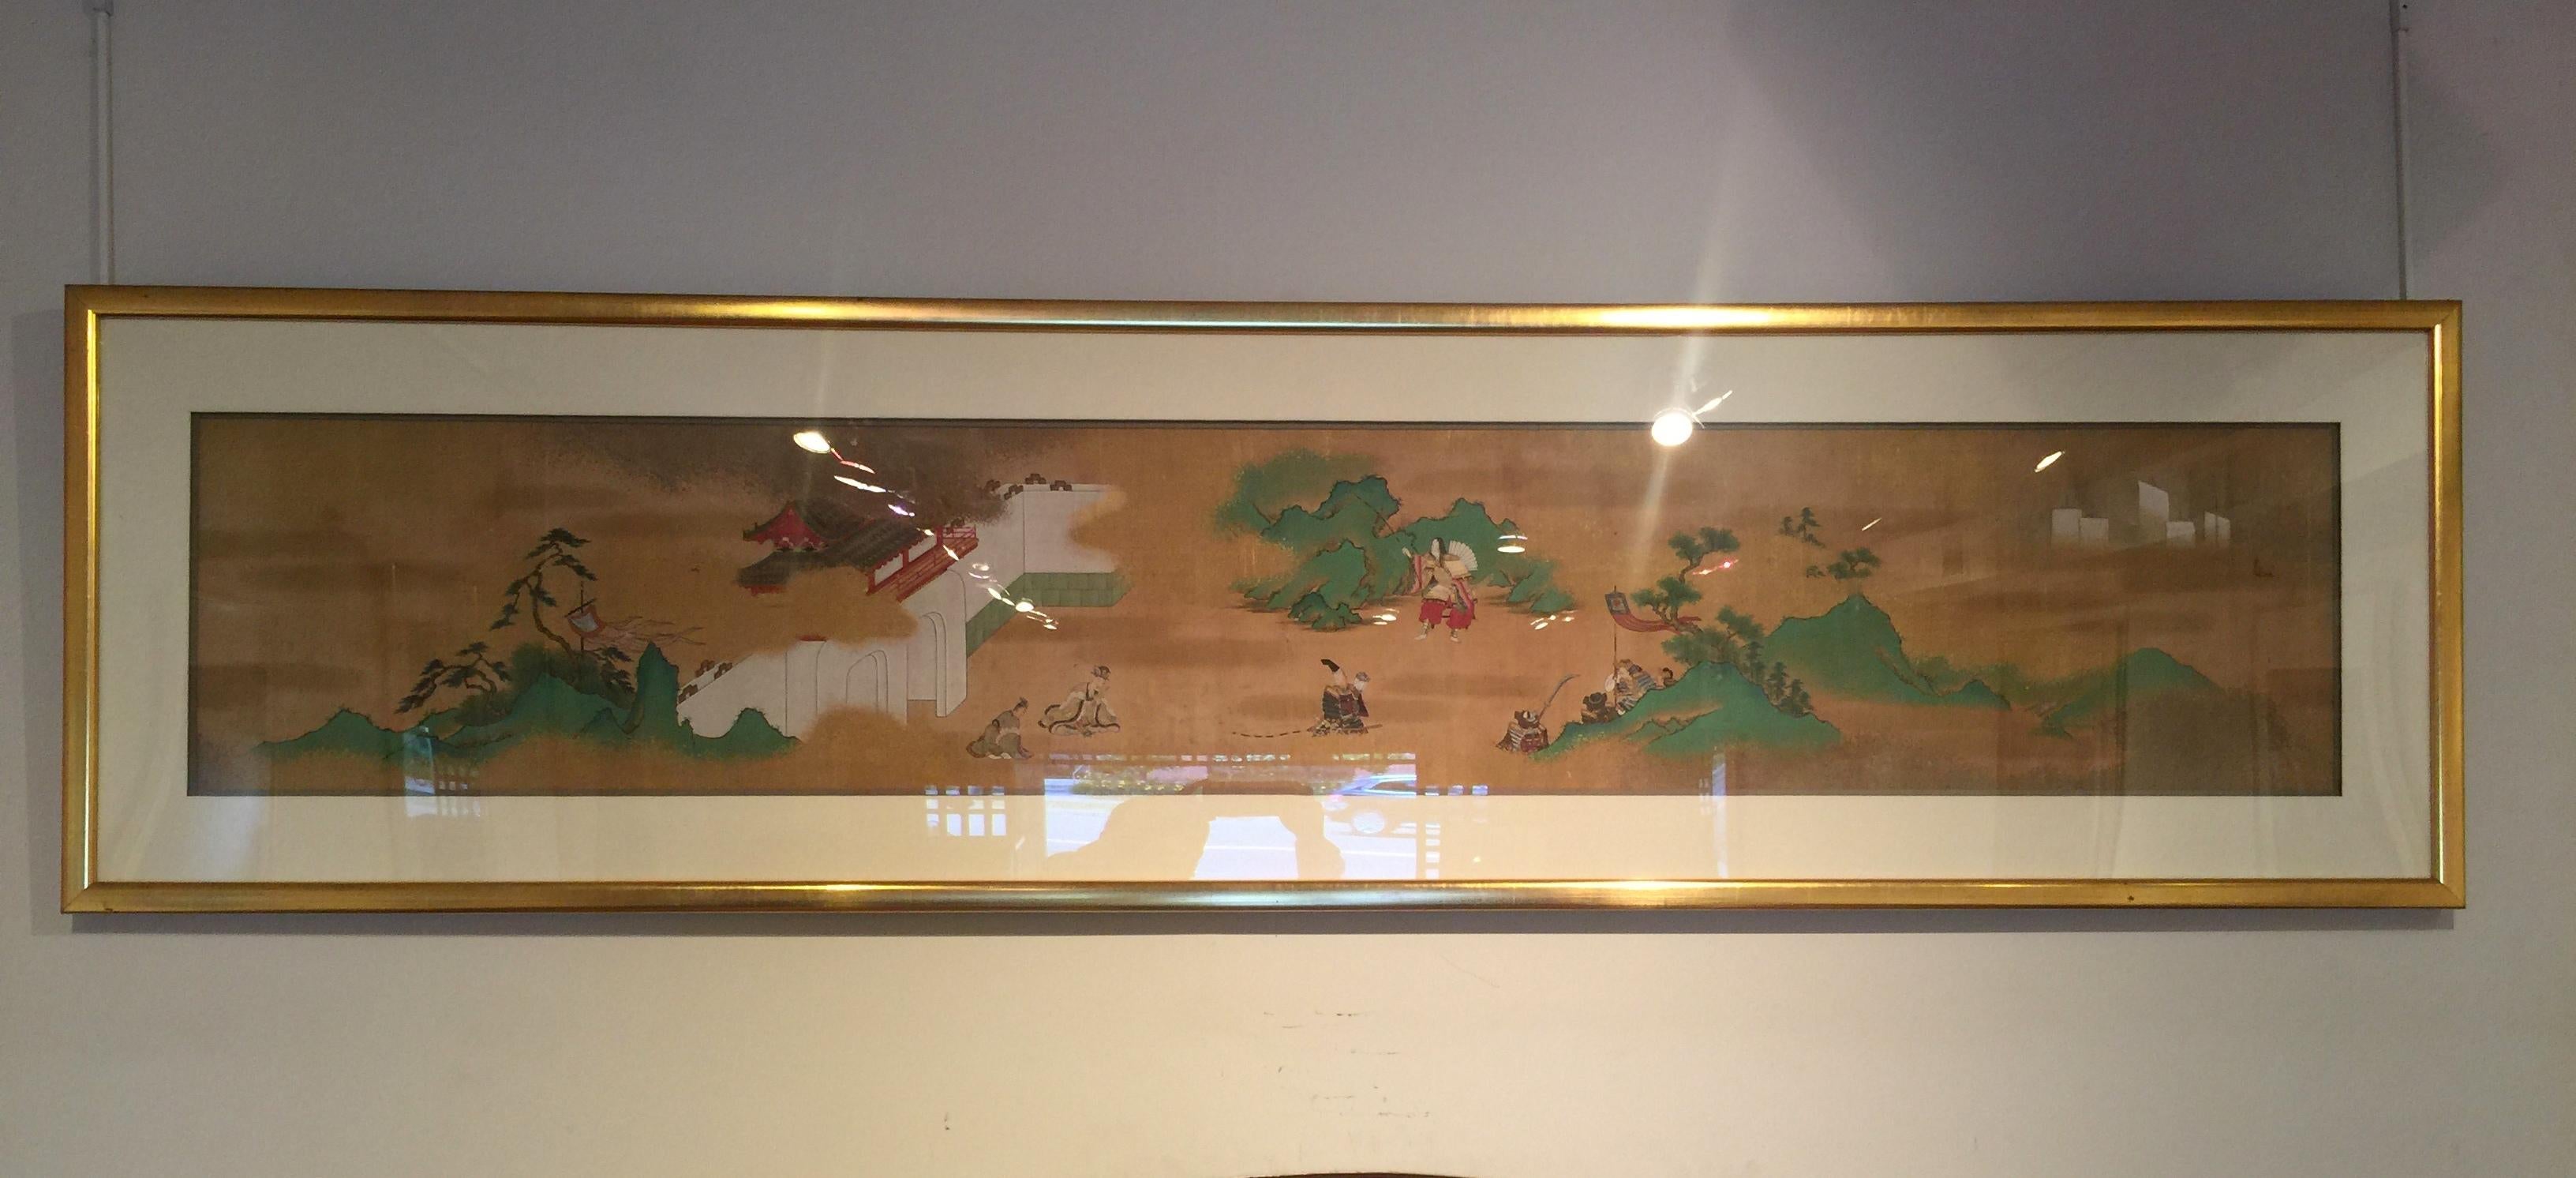 Peinture japonaise raffinée au pinceau représentant des samouraïs et des archers dans un paysage, une section provenant d'un rouleau à main.
 encre et couleur sur soie.  Cadre de conservation
Taille globale :  Largeur de 74 pouces  Hauteur de 19